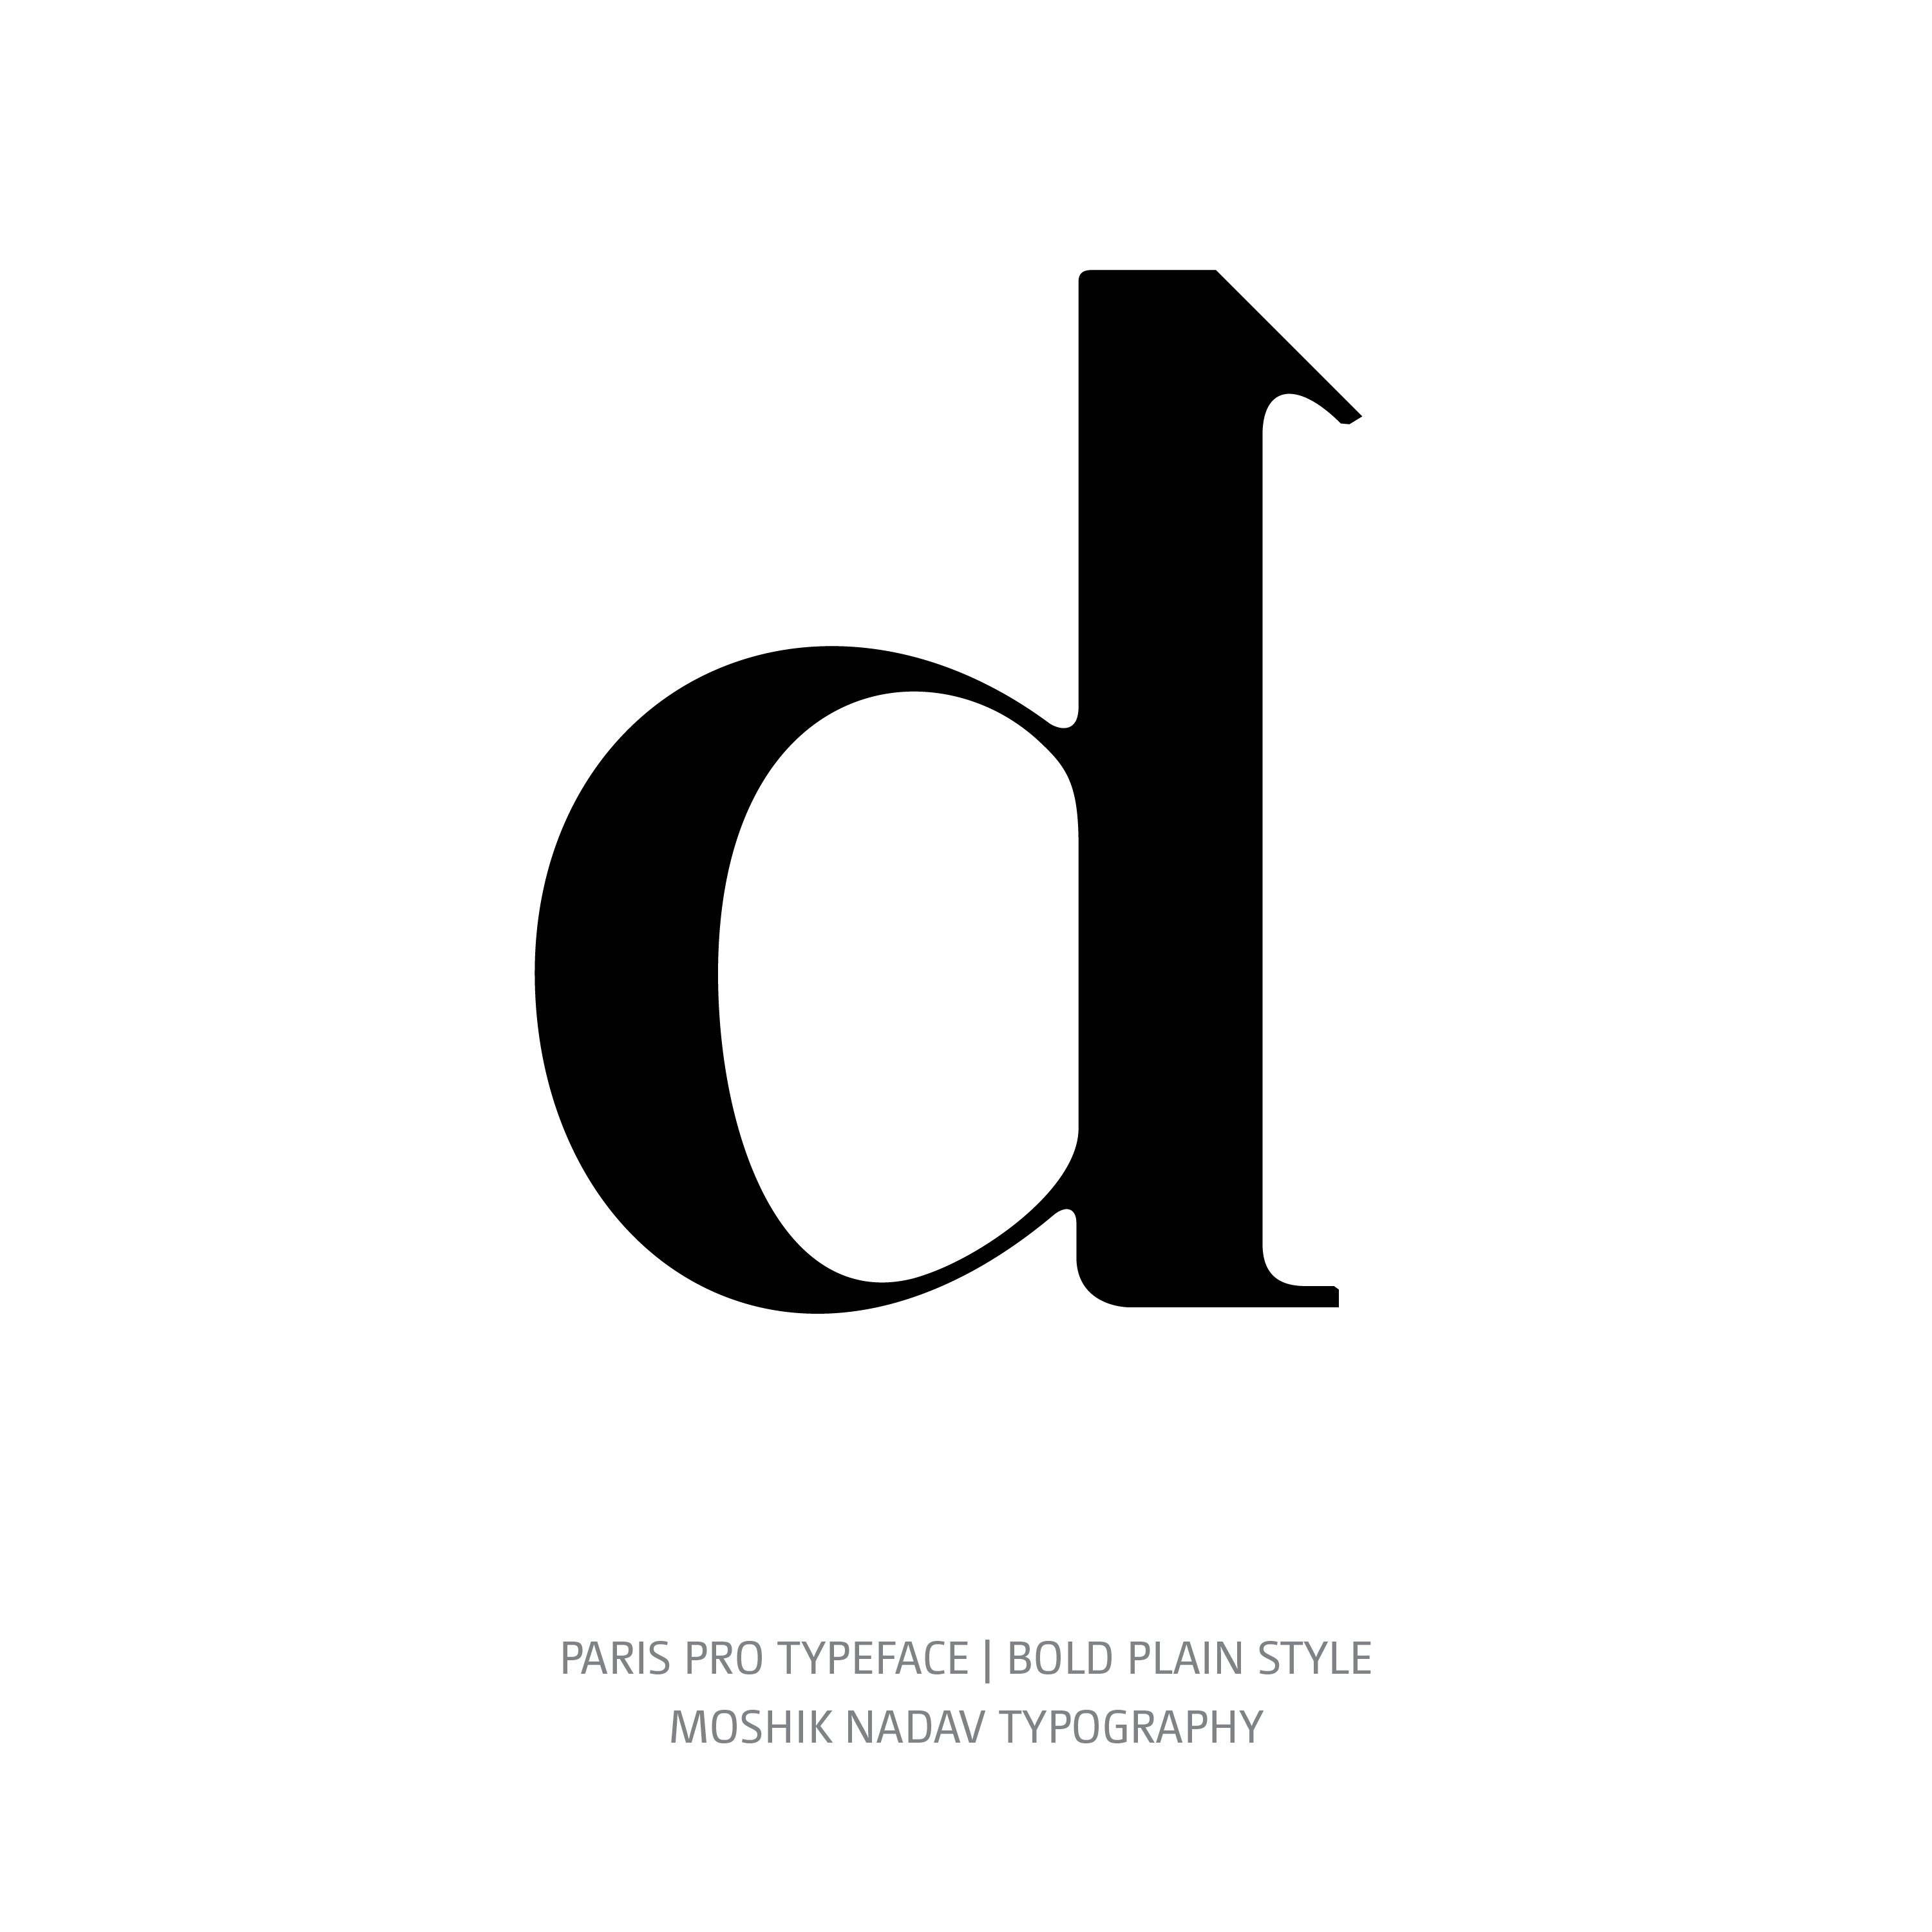 Paris Pro Typeface Bold Plain d